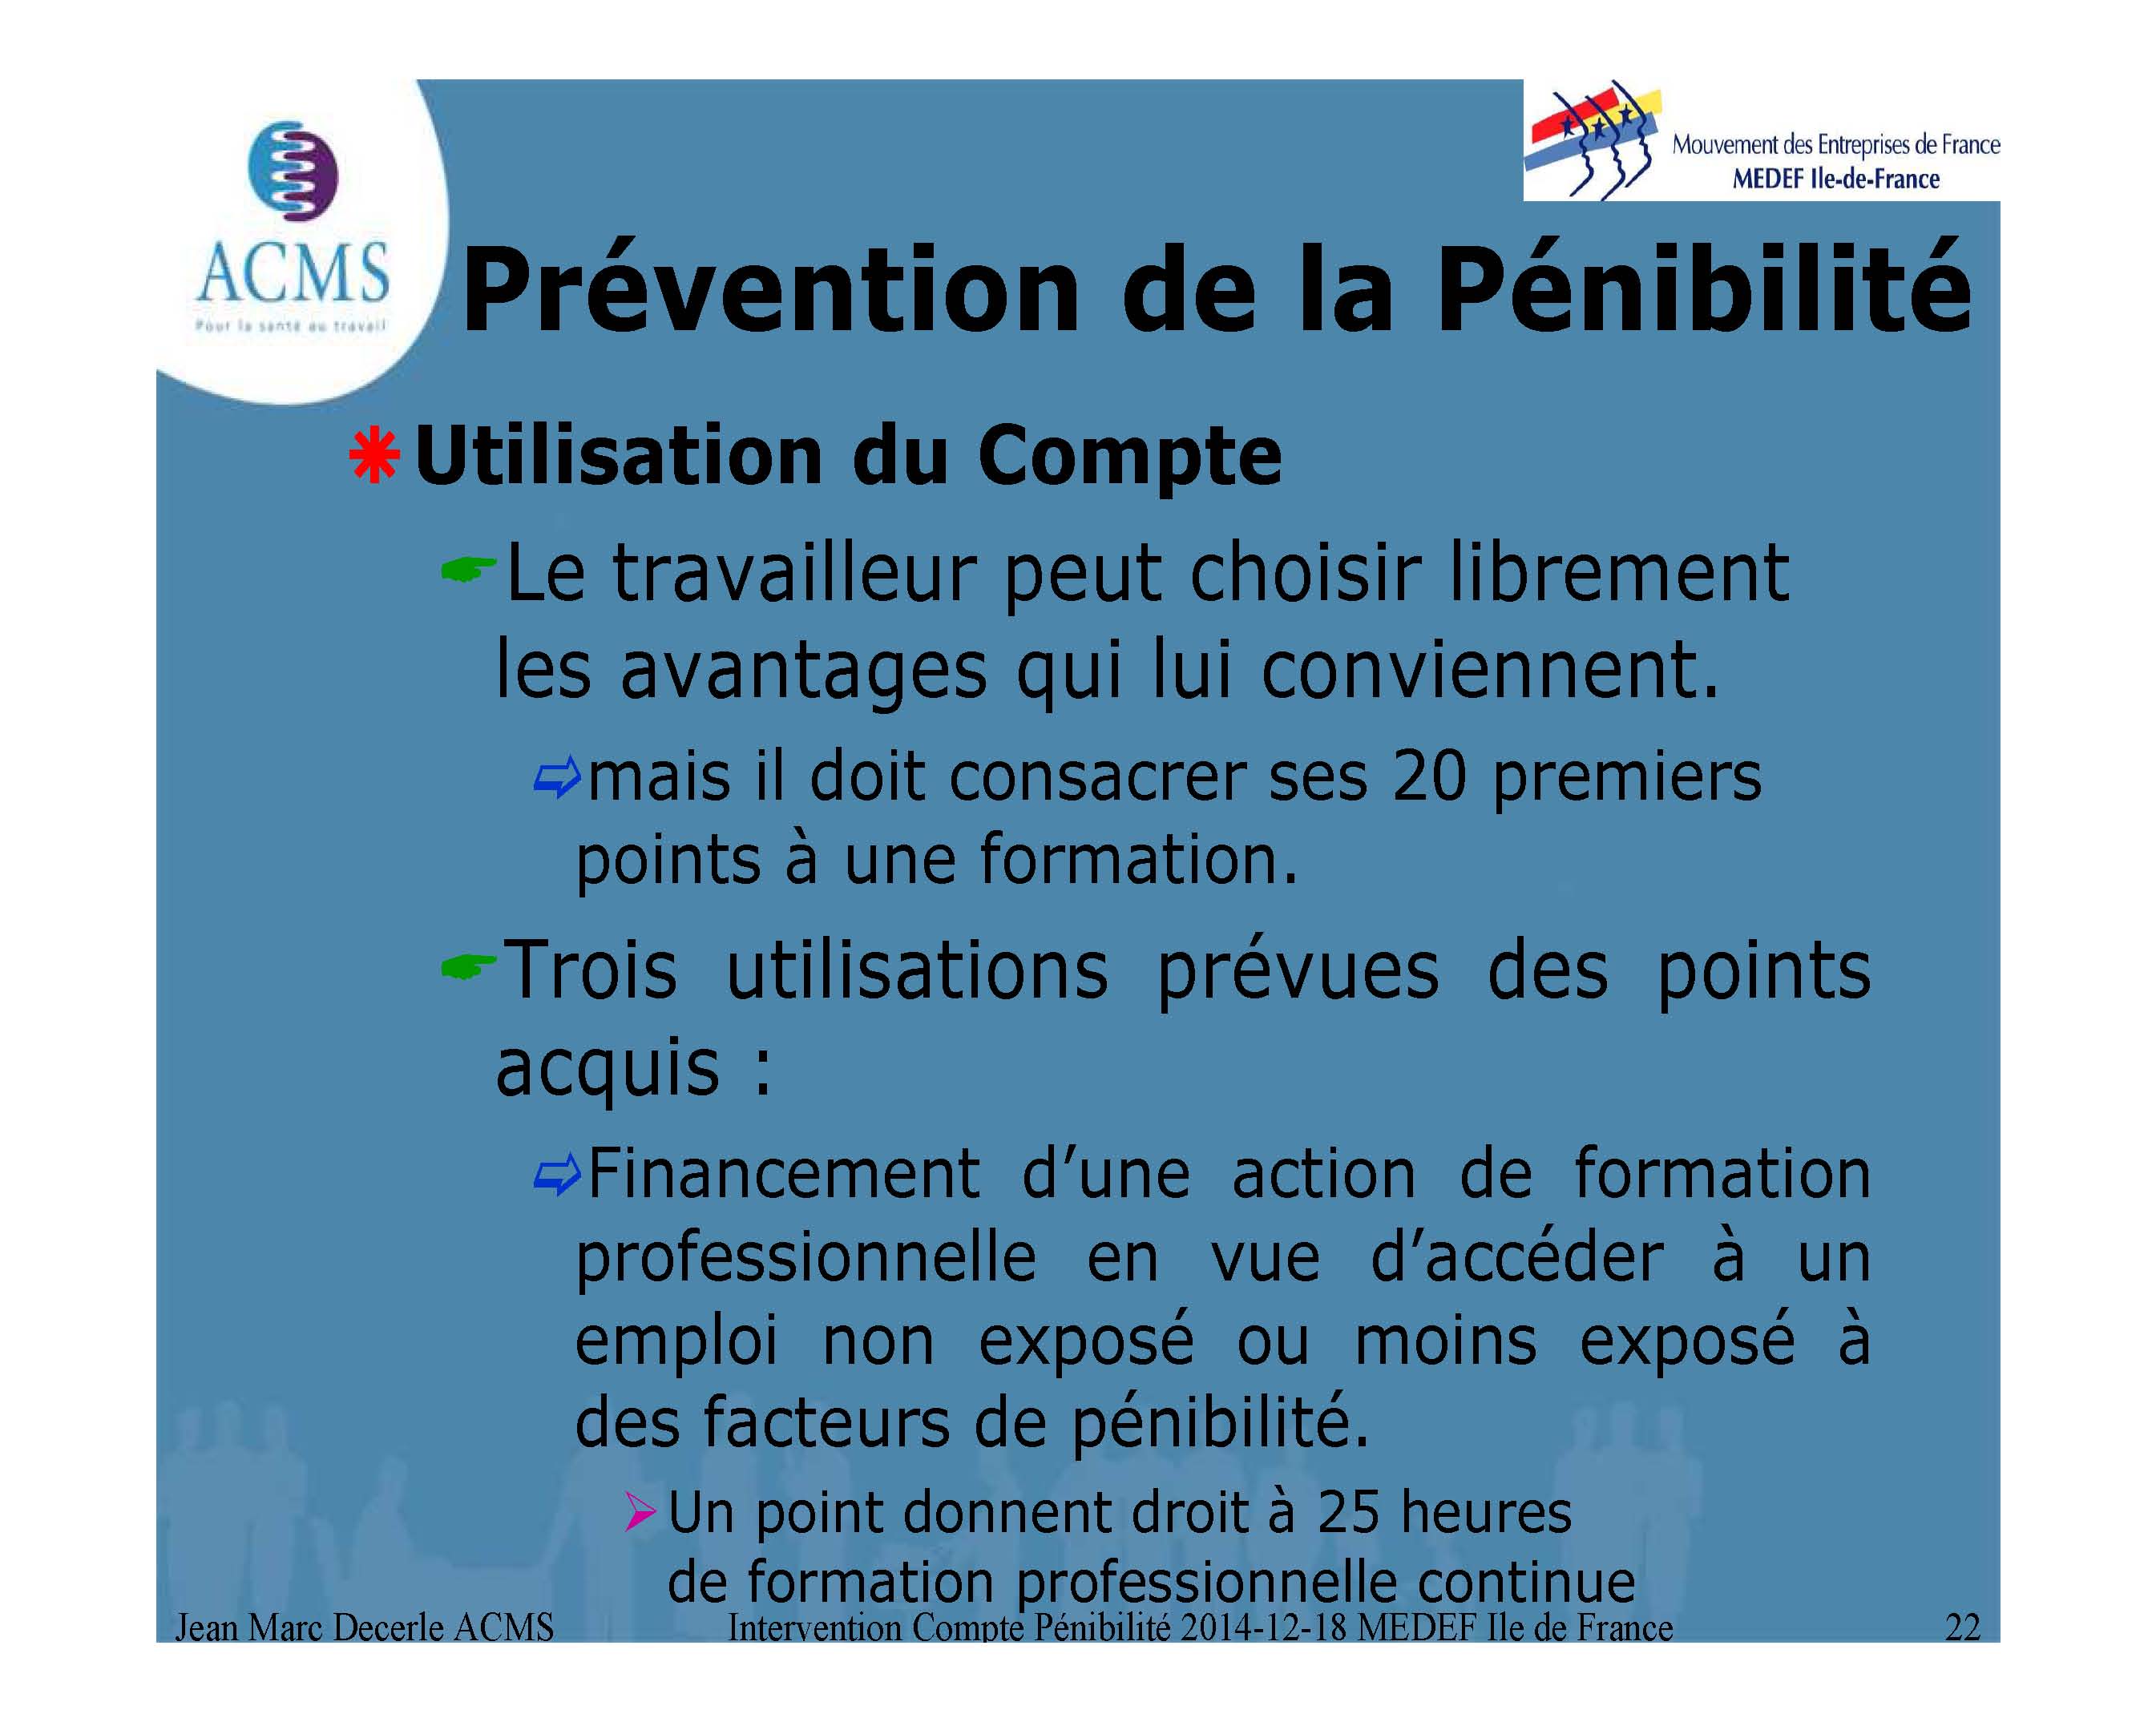 2014-12-18 Compte PÃ©nibilite MEDEF Ile de France_Page_22